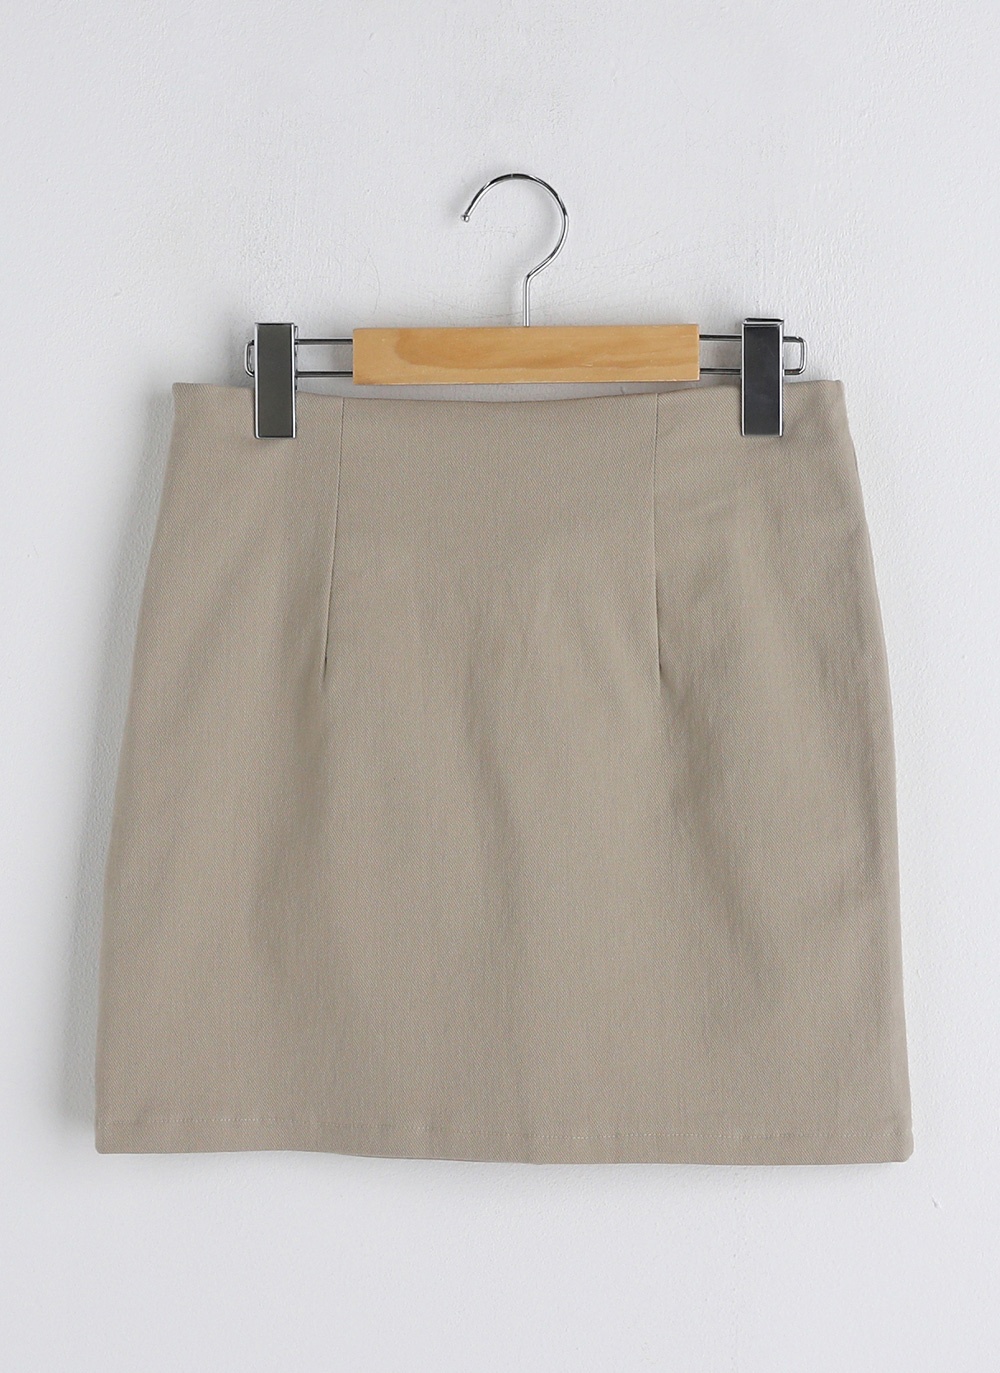 Hラインミニスカート・t267294（スカート/スカート）| uni.uni0910 | 東京ガールズマーケット